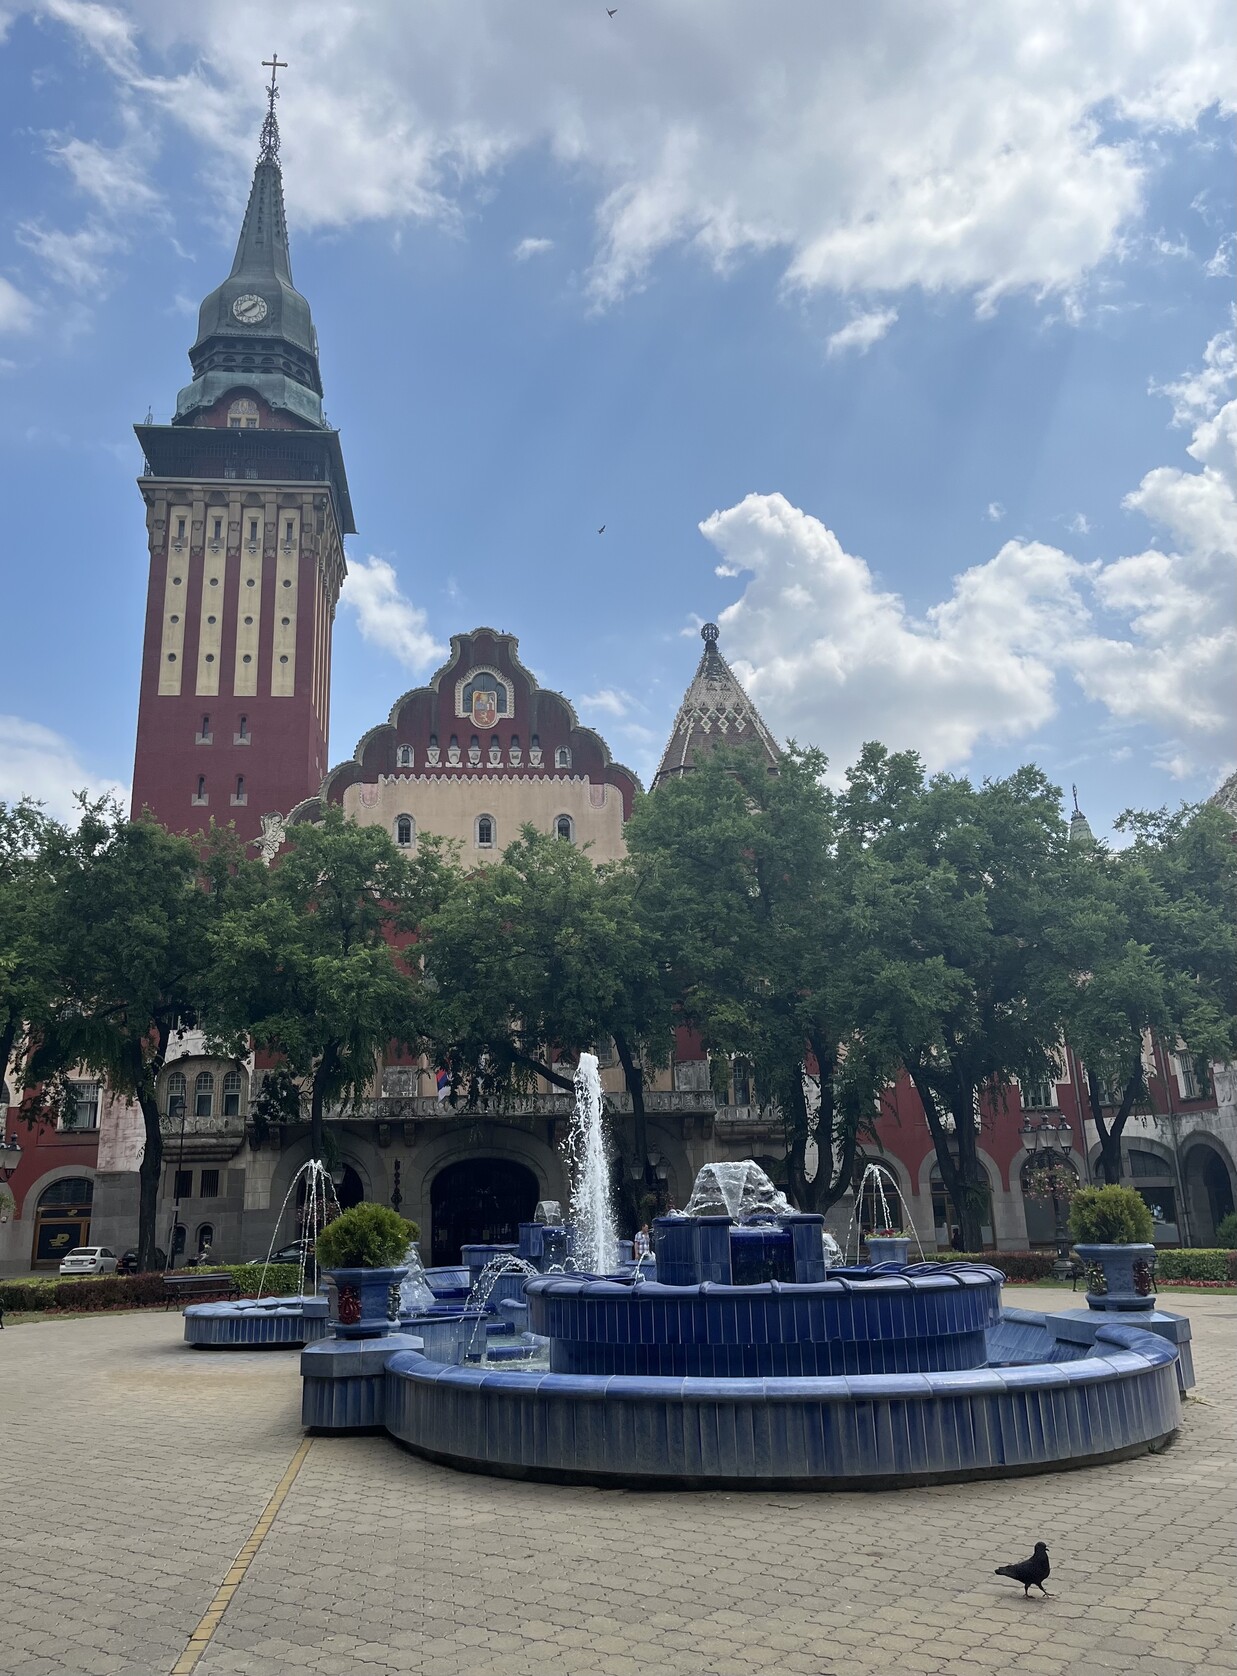 Синий комплекс фонтанов, за которым городская ратуша, прячущаяся за листвой деревьев 